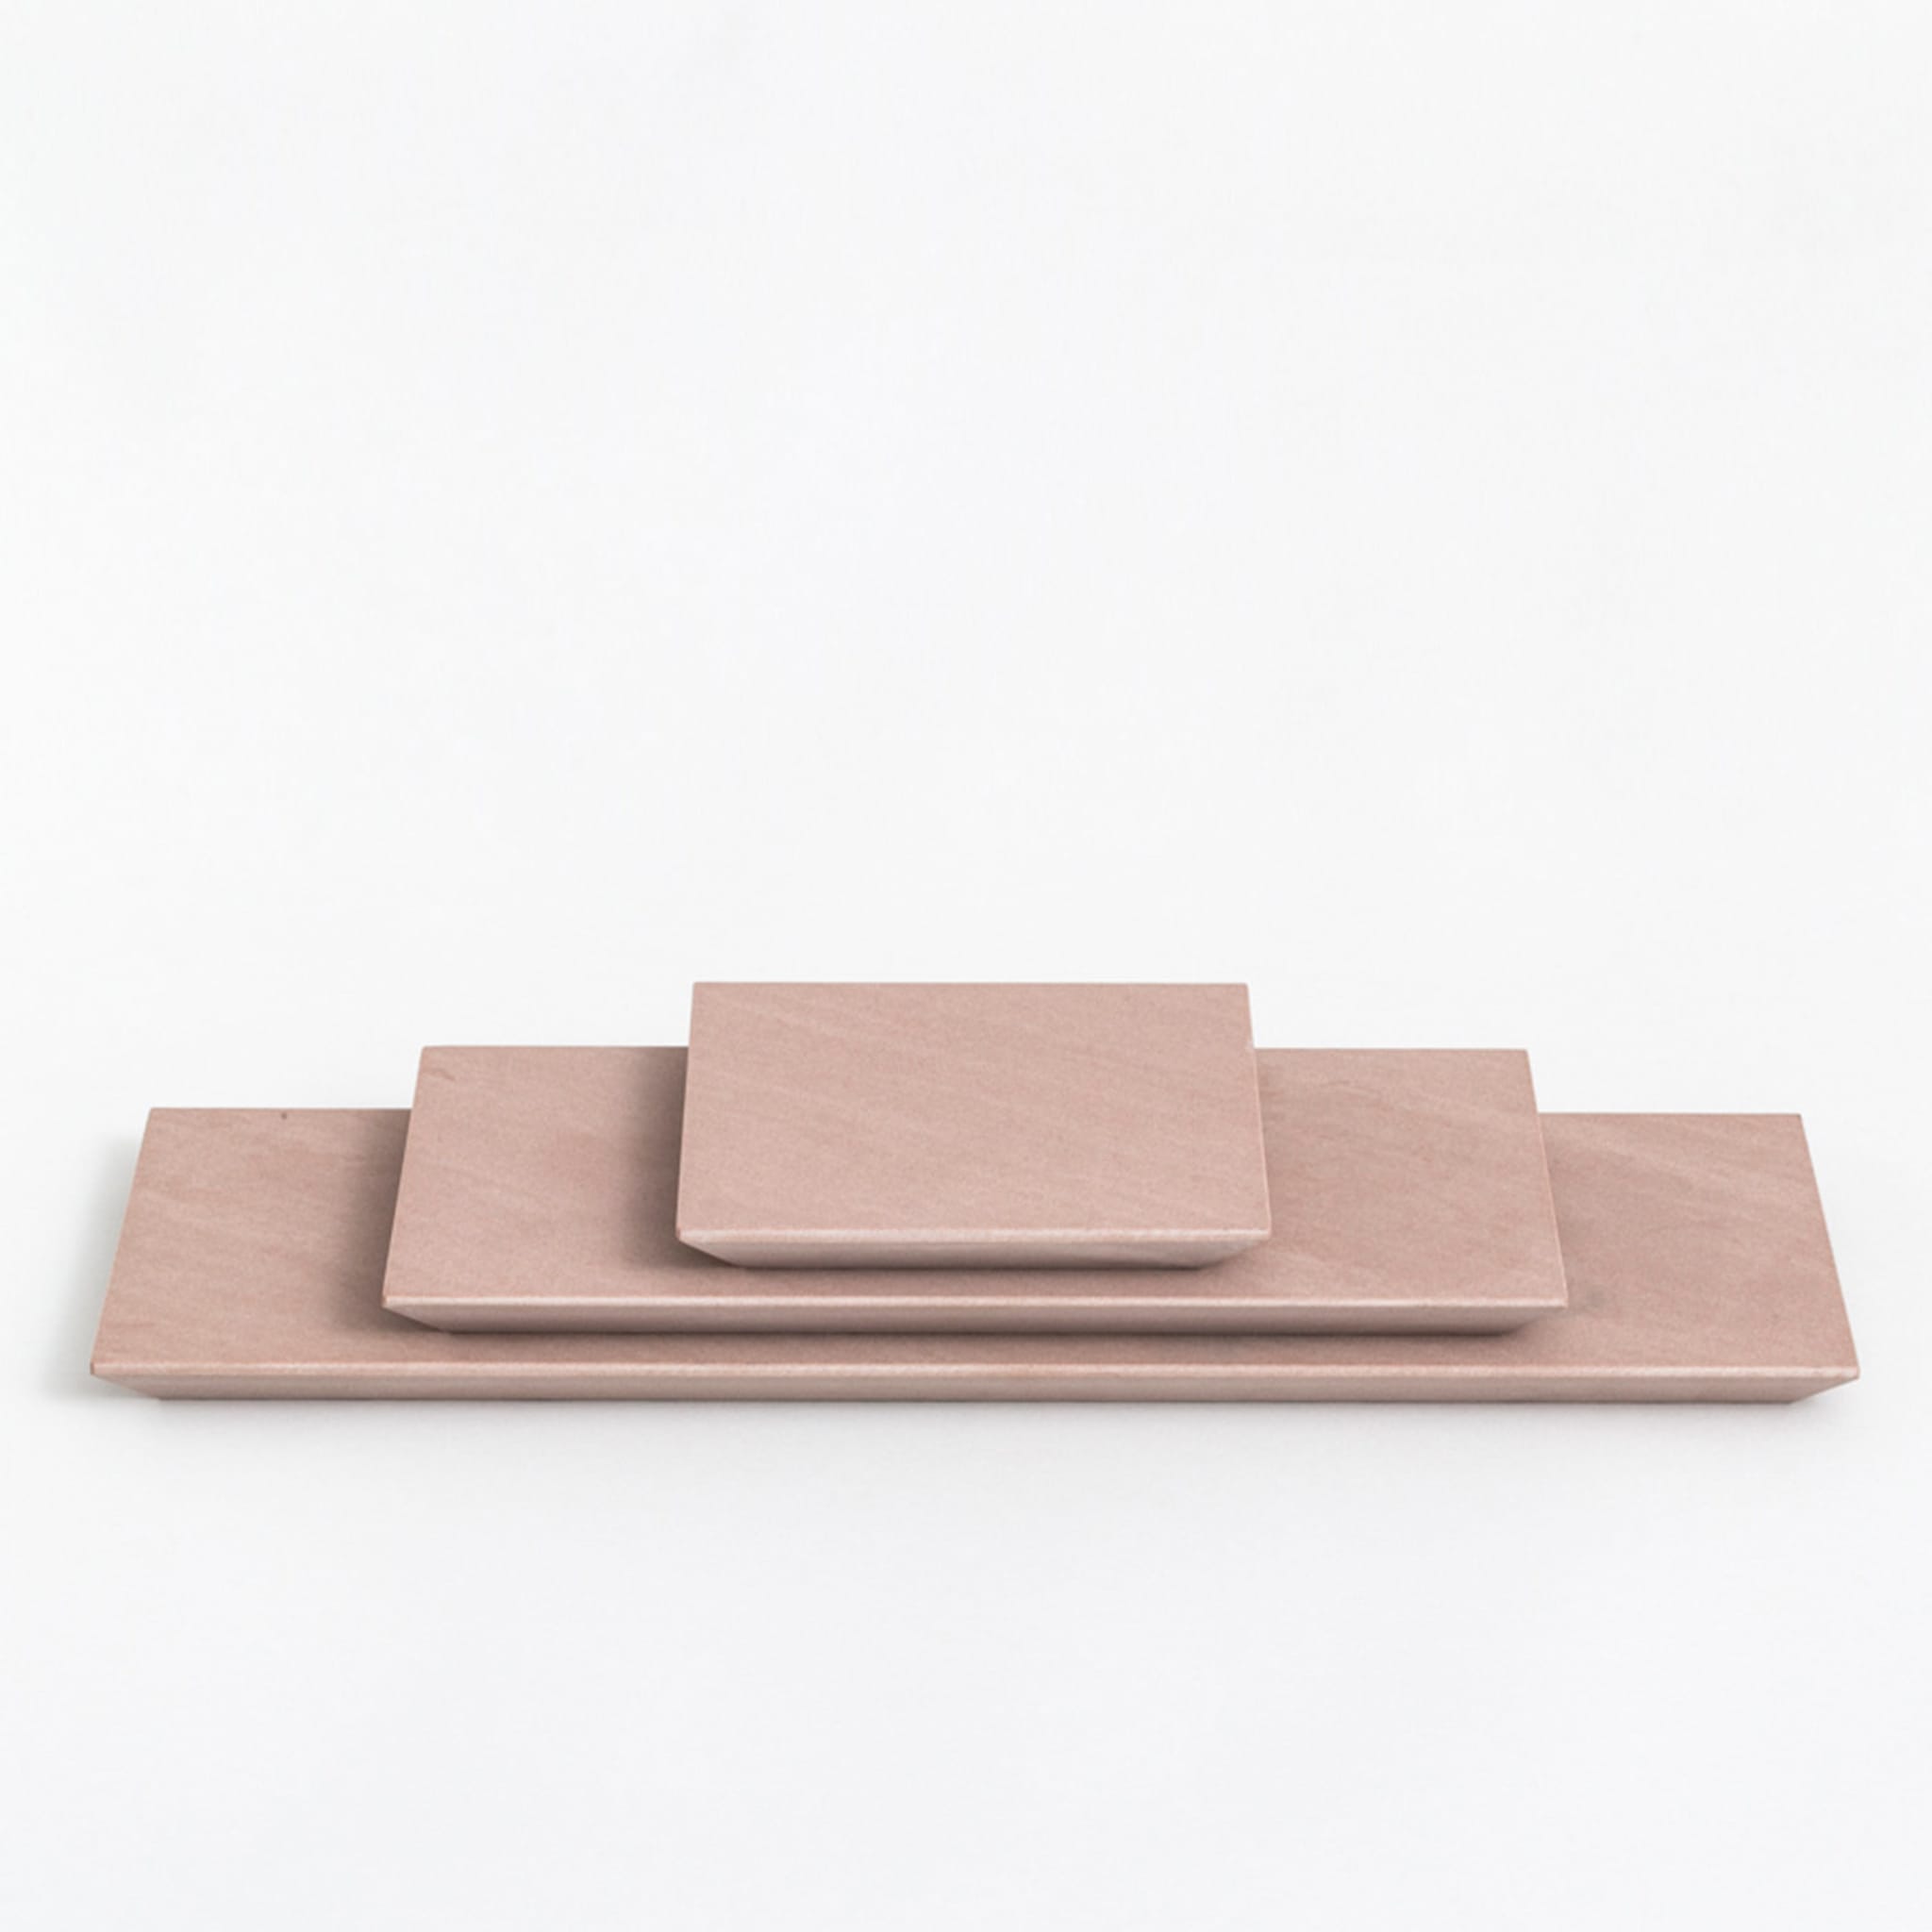 Pink Quartzite Set of 3 Cutting Boards - Alternative view 1